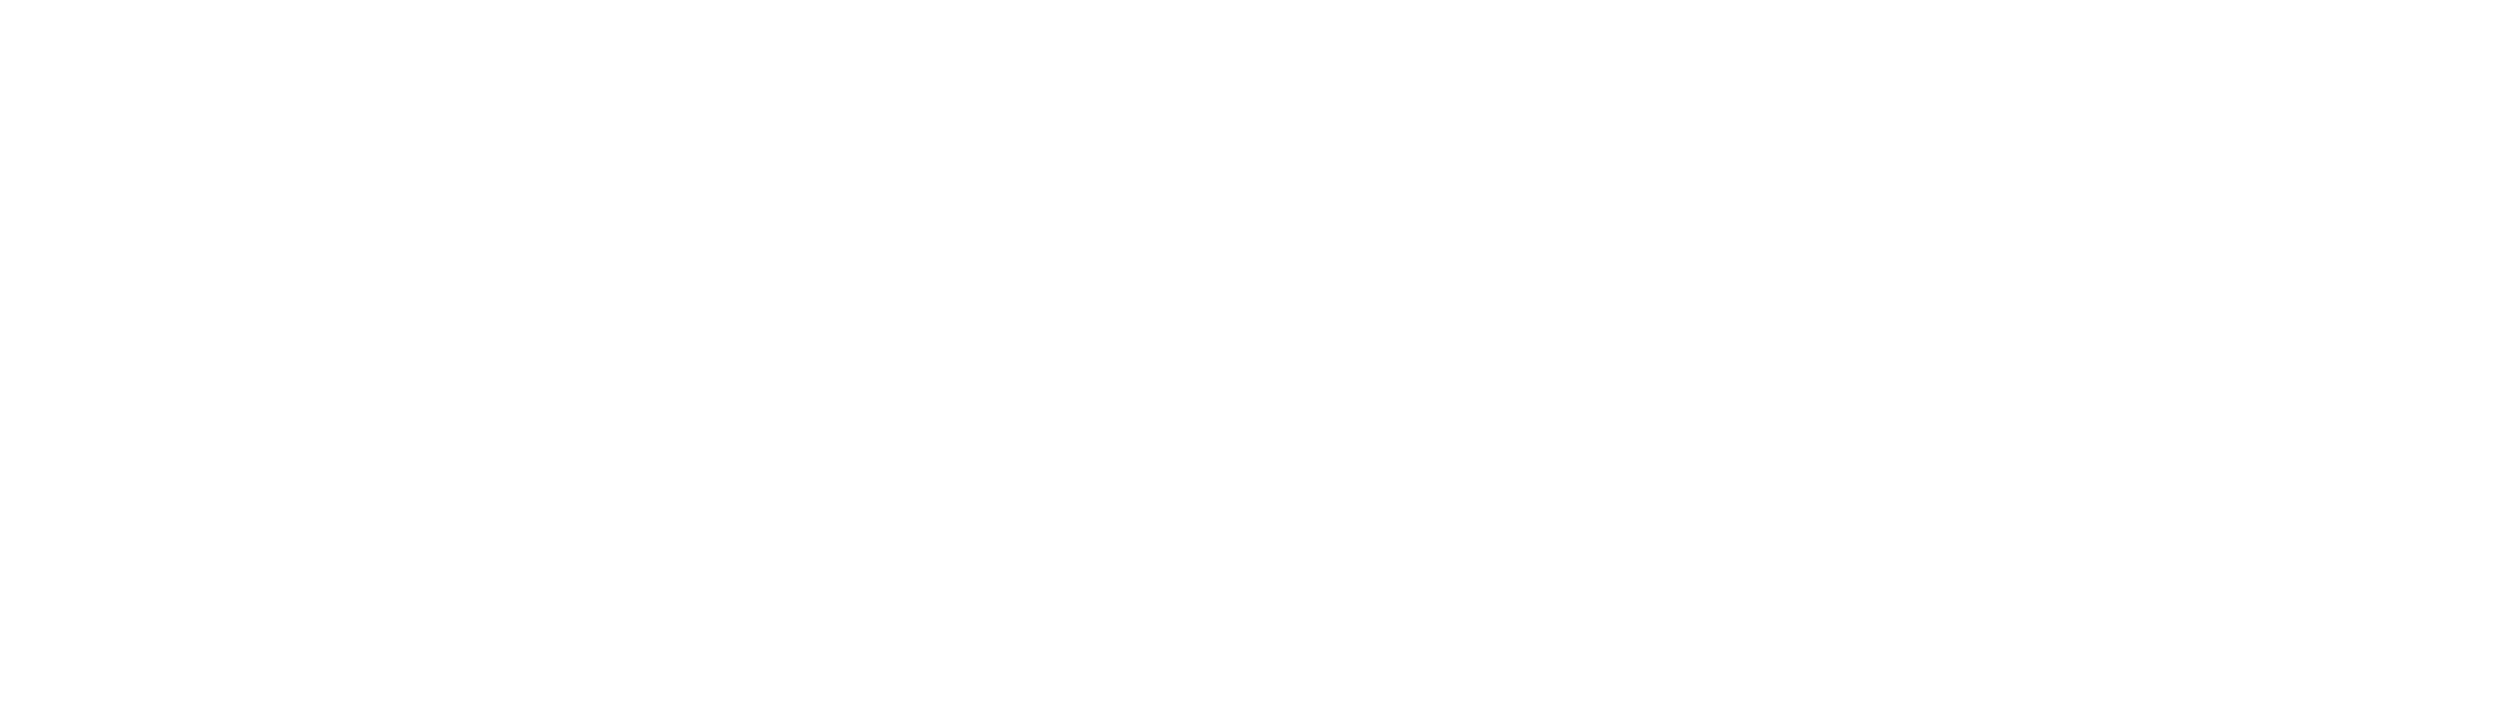 Shenandoah Advisors